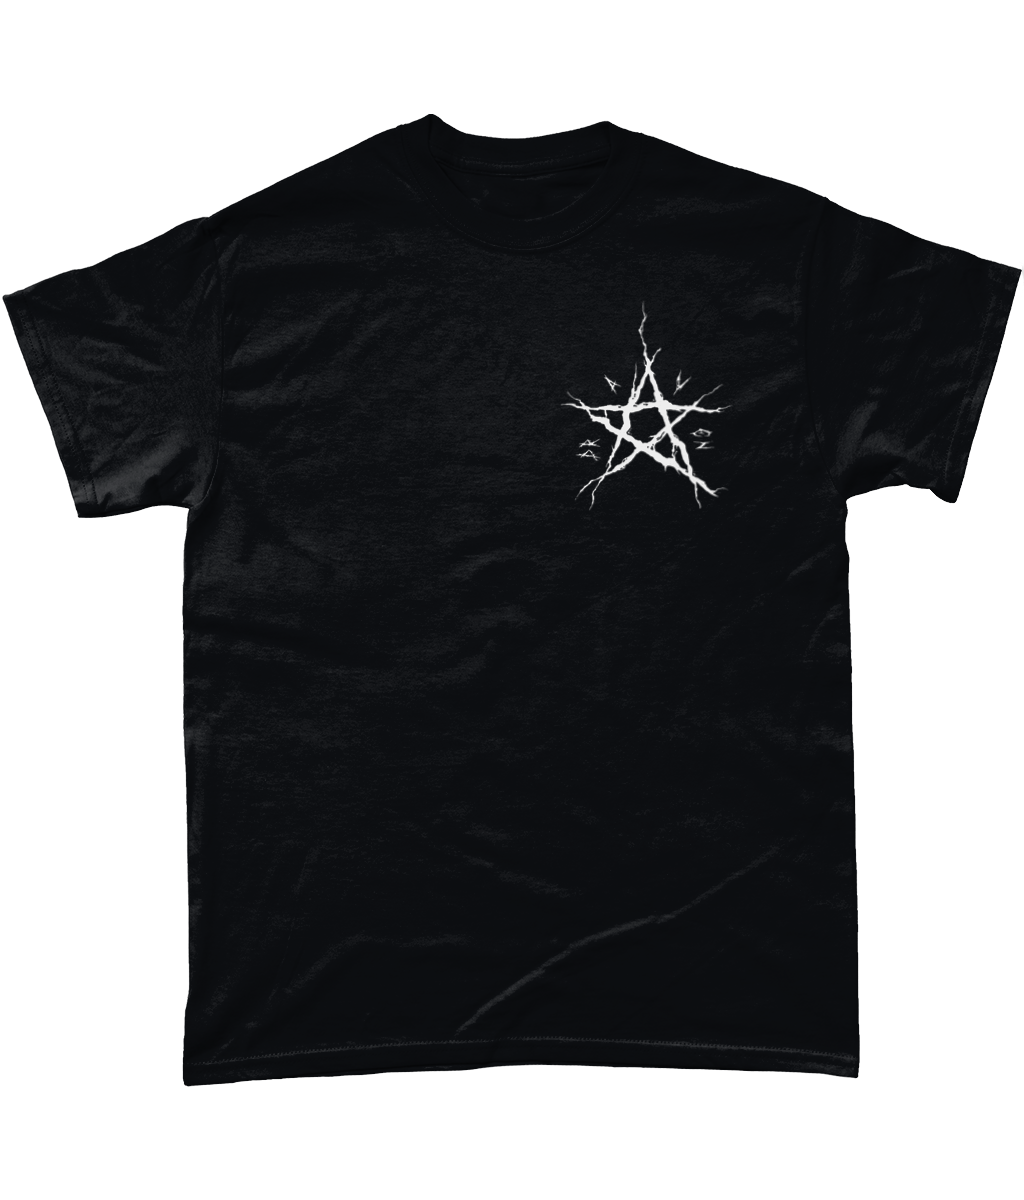 Draven - Metalcore T-Shirt